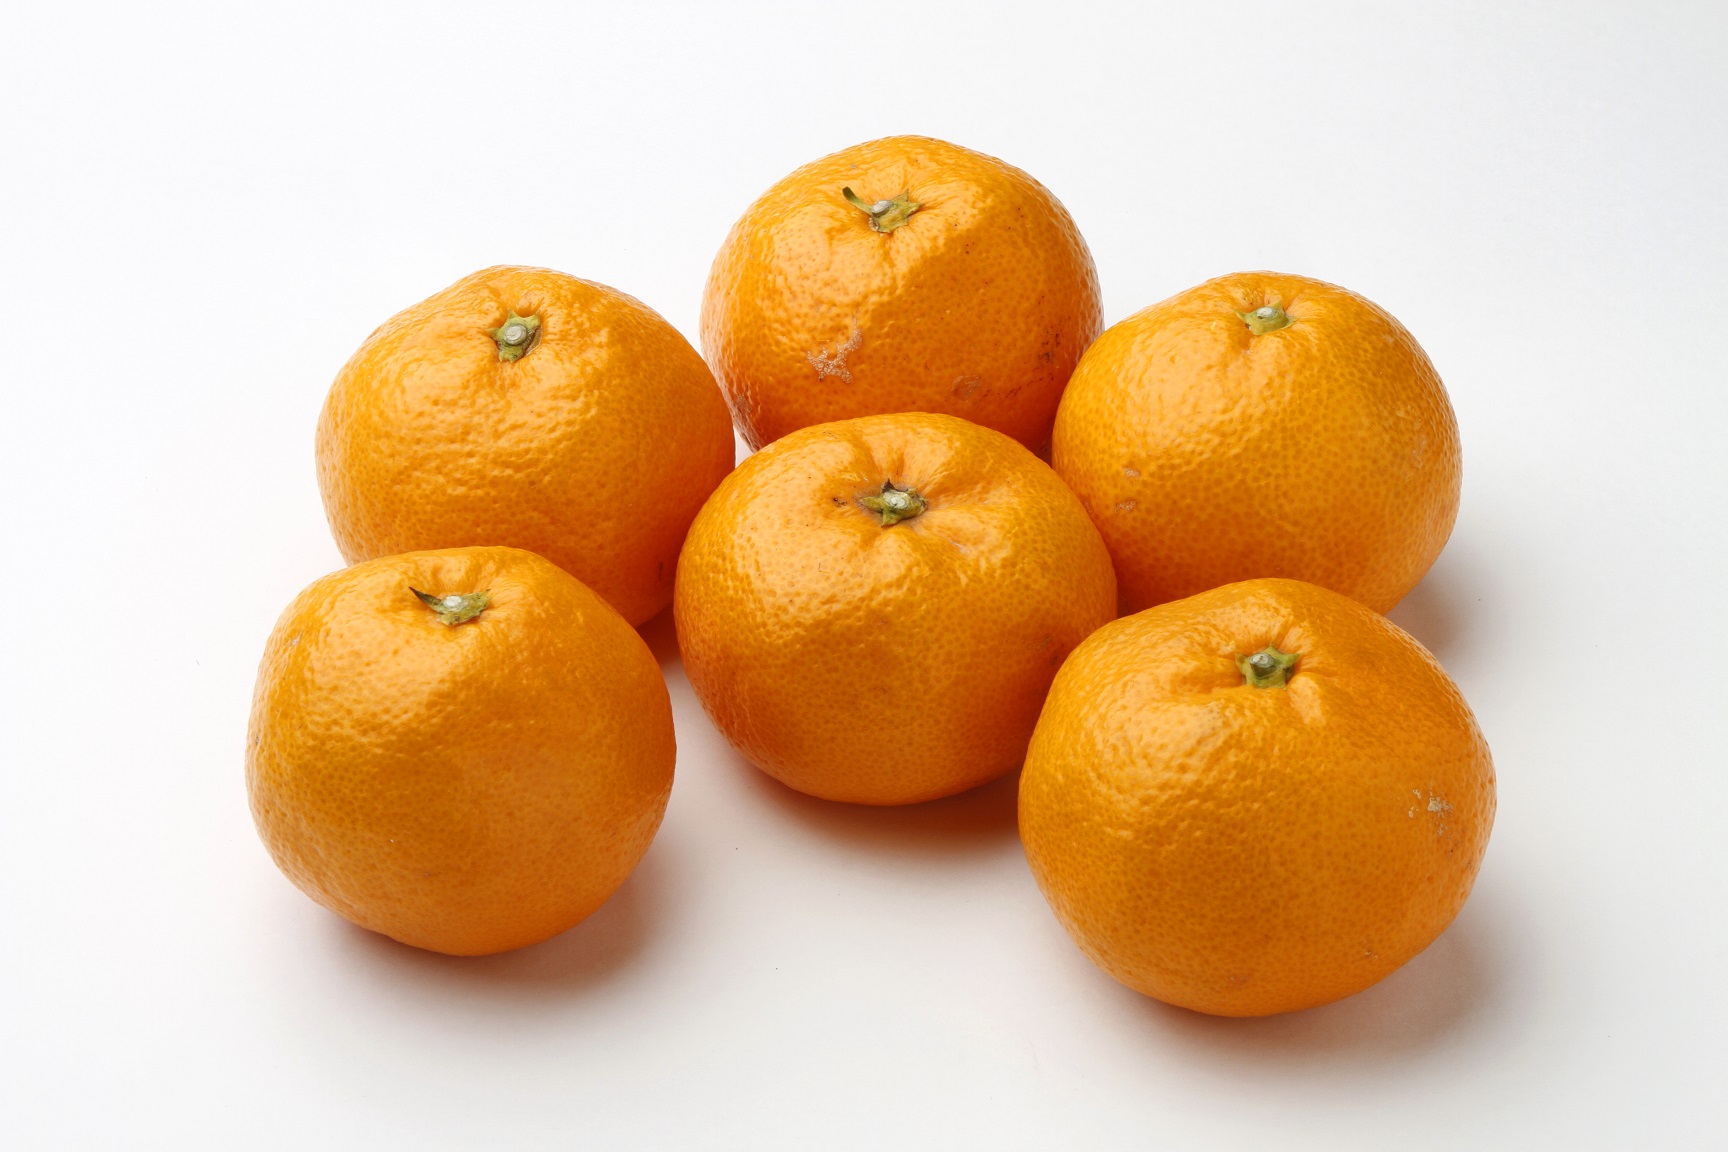 6つのこぶし大のオレンジ色のミカンが並べられた様子